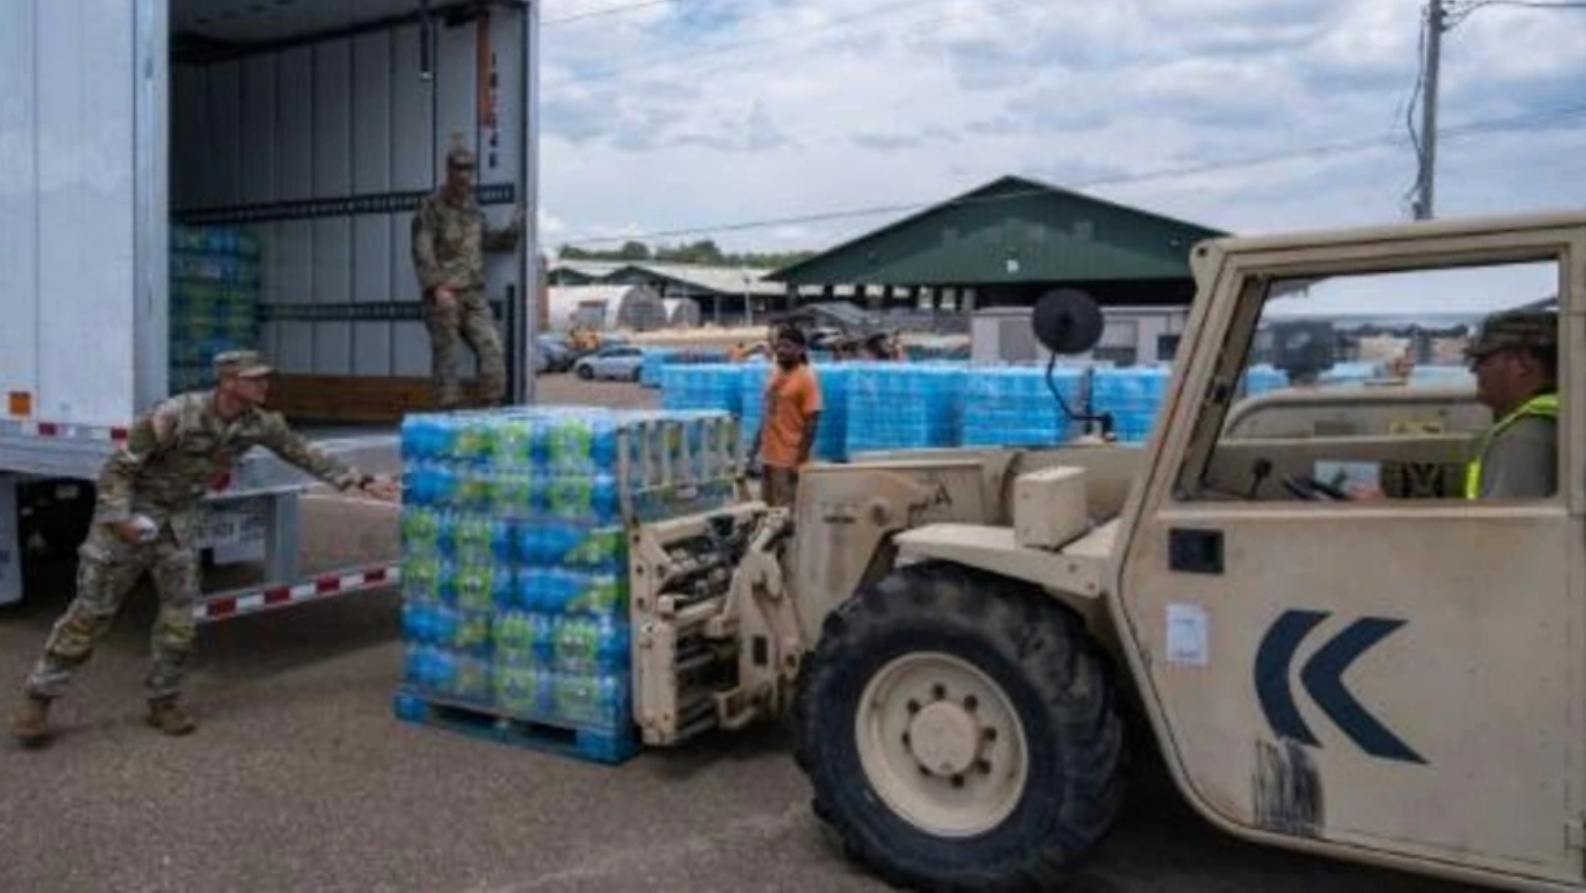  جنود الحرس الوطني يفرغون منصّات تحميل عبوات مياه في جاكسون في ميسيسيبي، في 2 سبتمبر 2022 